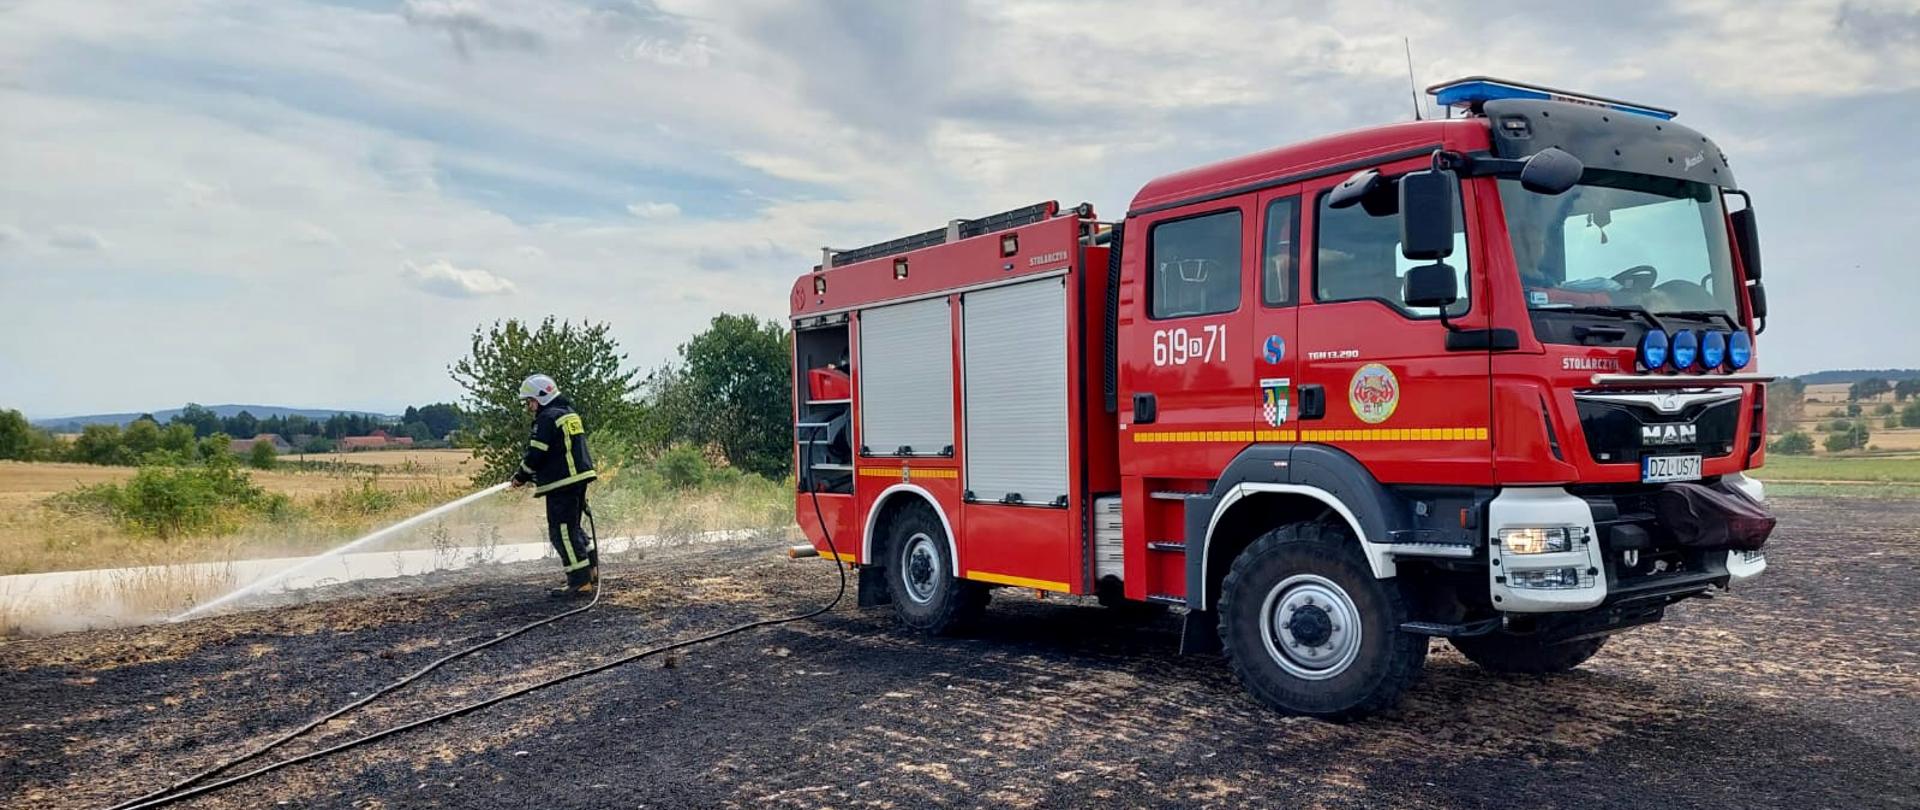 czerwony pojazd strażacki na wypalonym ściernisku, po lewej stronie strażak dogaszający linią gaśniczą pożar